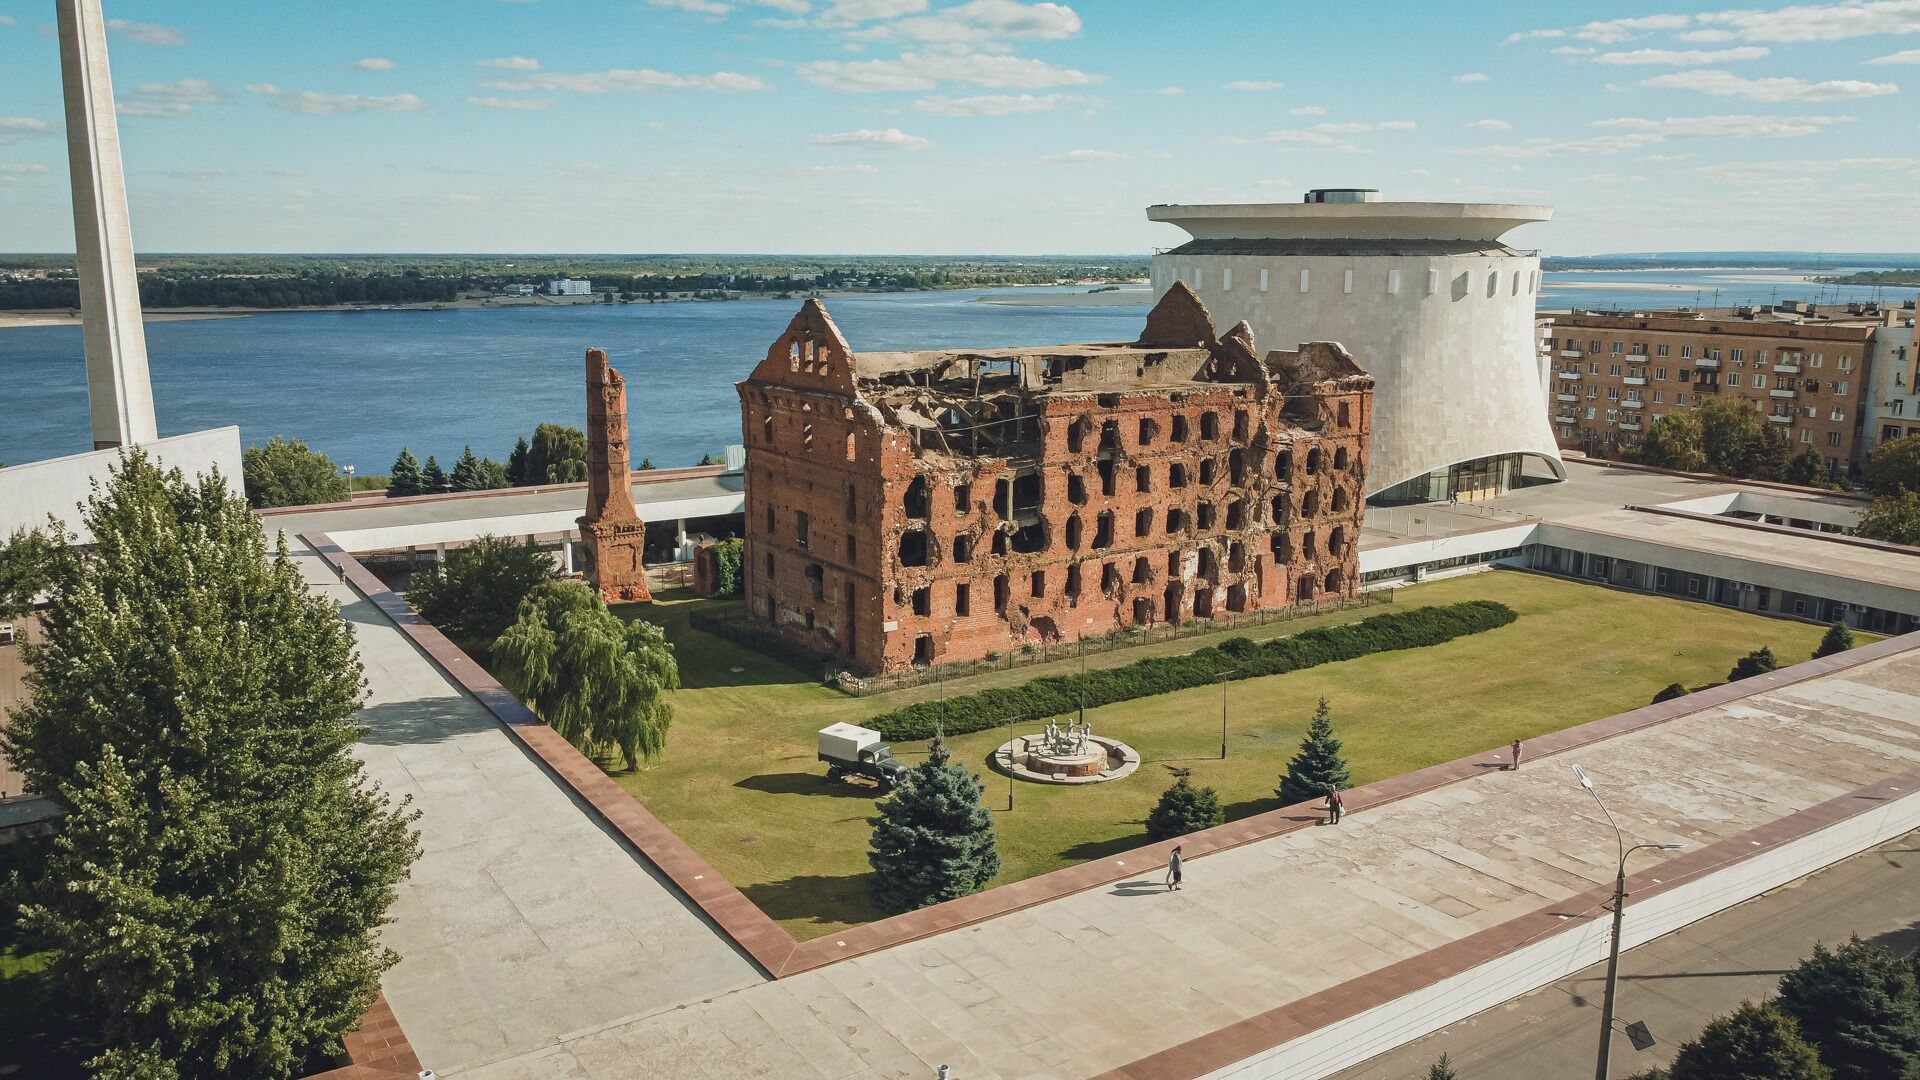 Мельница Гергардта и музей-панорама "Сталинградская битва" в Волгограде.